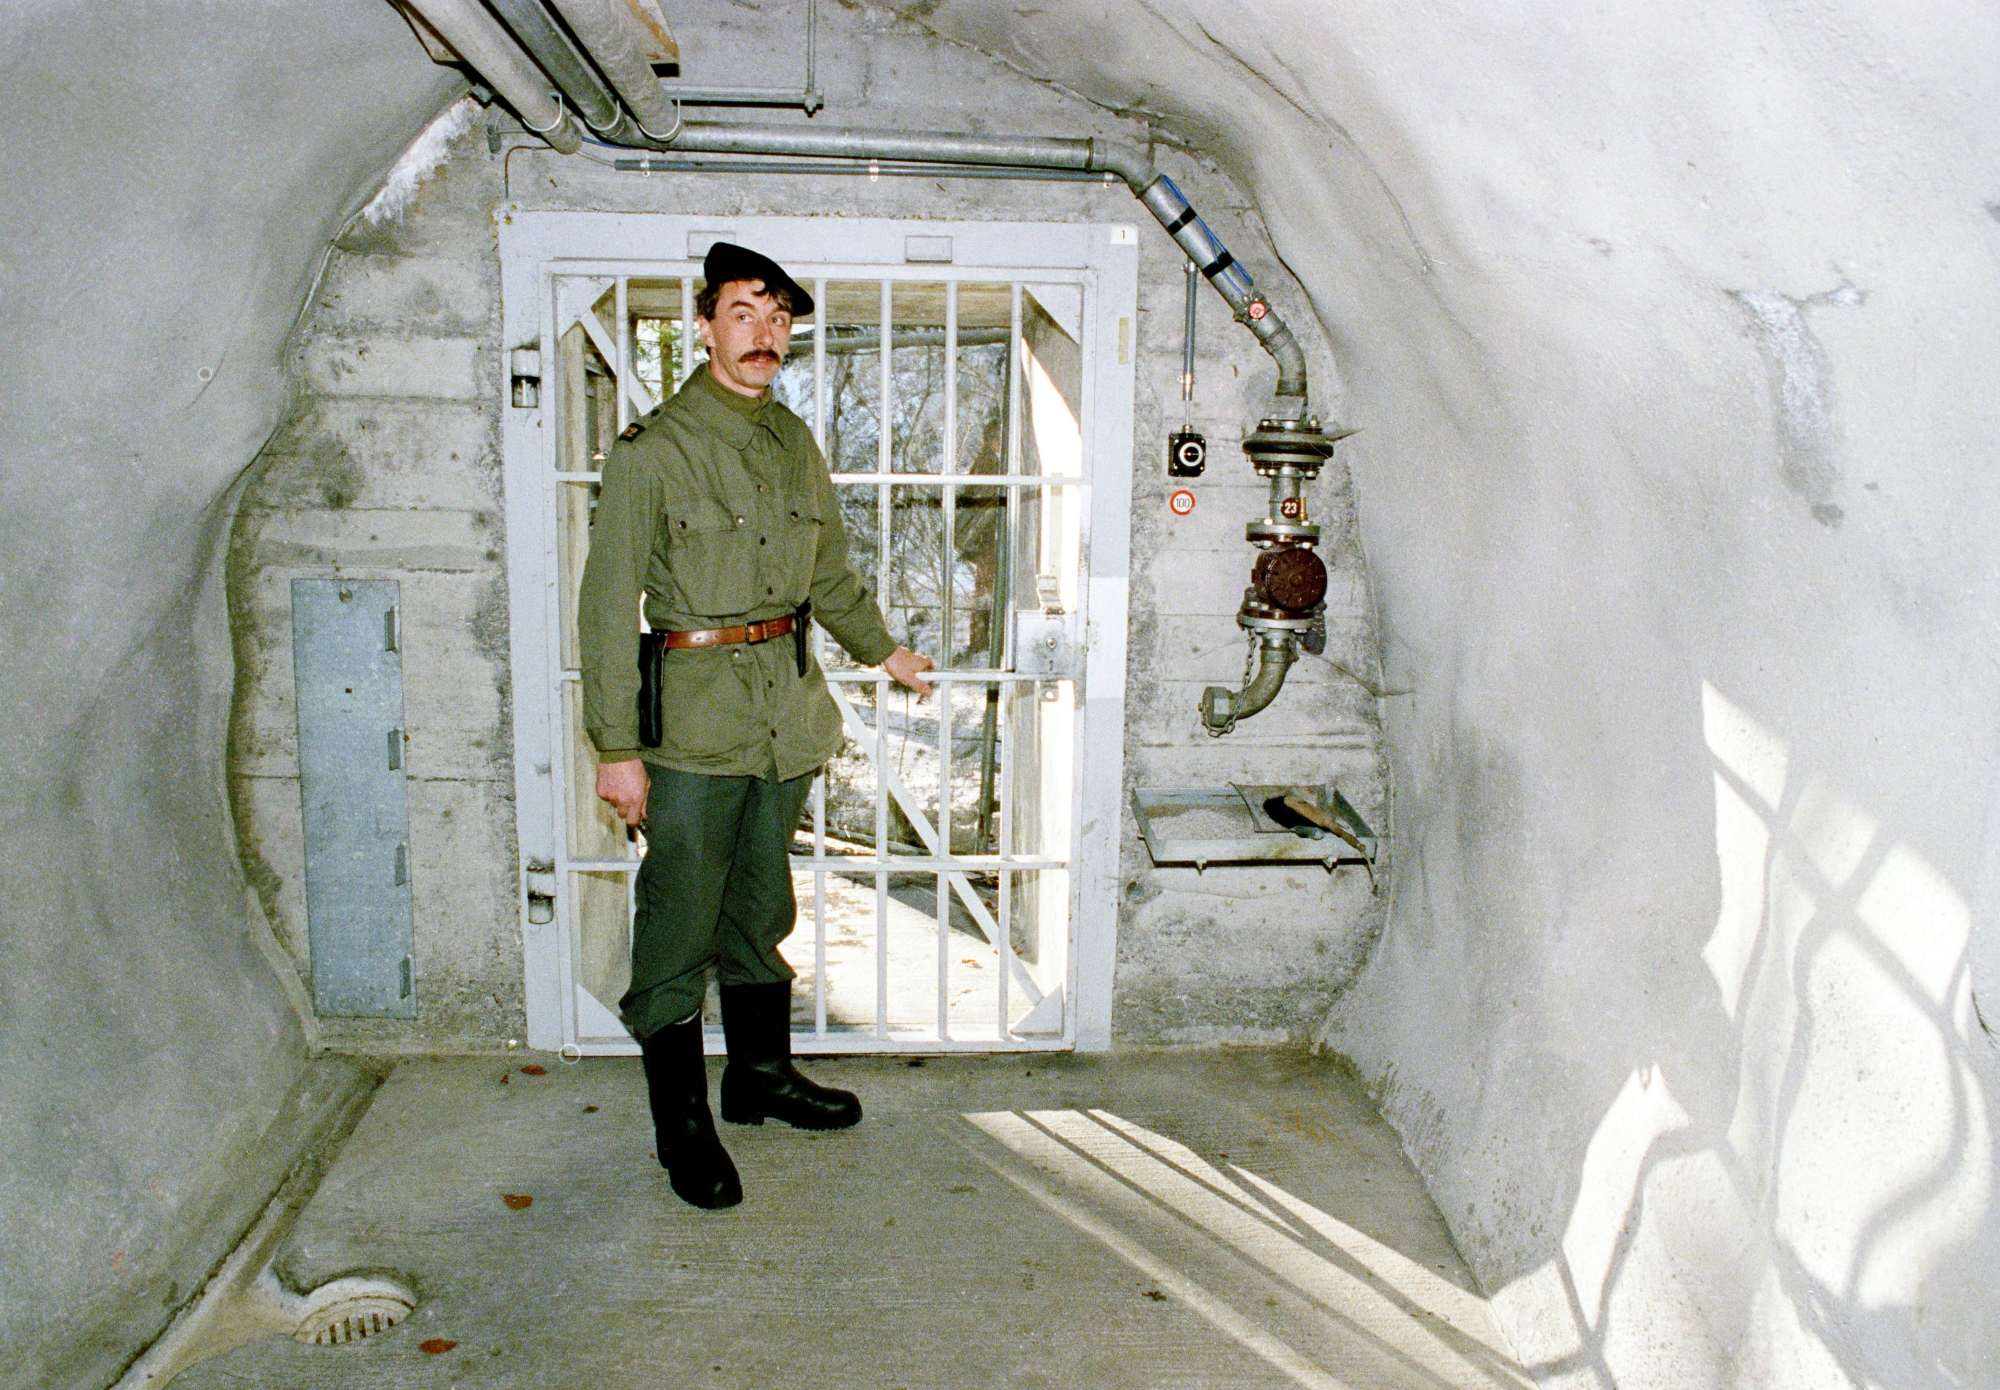 Ein Soldat steht anlaesslich einer Pressefuehrung zur Information ueber die Geheimarmee P-26 beim Eingang der unterirdischen Bunkeranlage bei Gstaad im Berner Oberland, aufgenommen am 7. Dezember 1990. Der Stuetzpunkt diente der Geheimorganisation als Waffenlager und Ausbildungsanlage. (KEYSTONE/Str) SCHWEIZ GEHEIMARMEE P-26